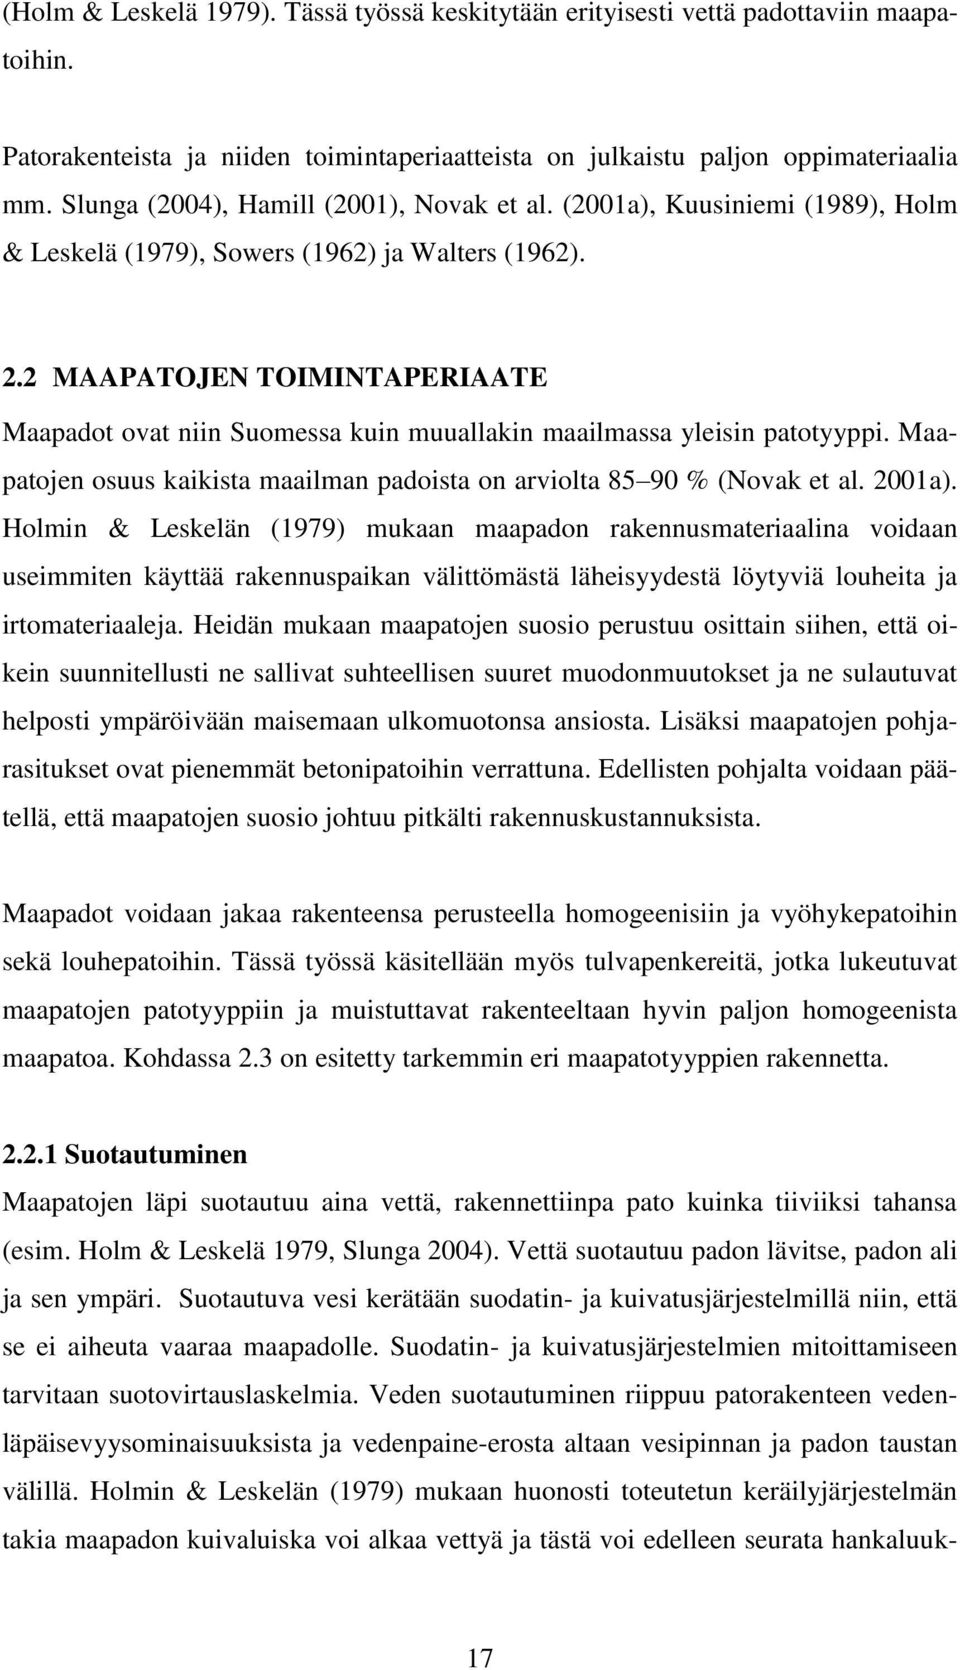 2 MAAPATOJEN TOIMINTAPERIAATE Maapadot ovat niin Suomessa kuin muuallakin maailmassa yleisin patotyyppi. Maapatojen osuus kaikista maailman padoista on arviolta 85 90 % (Novak et al. 2001a).